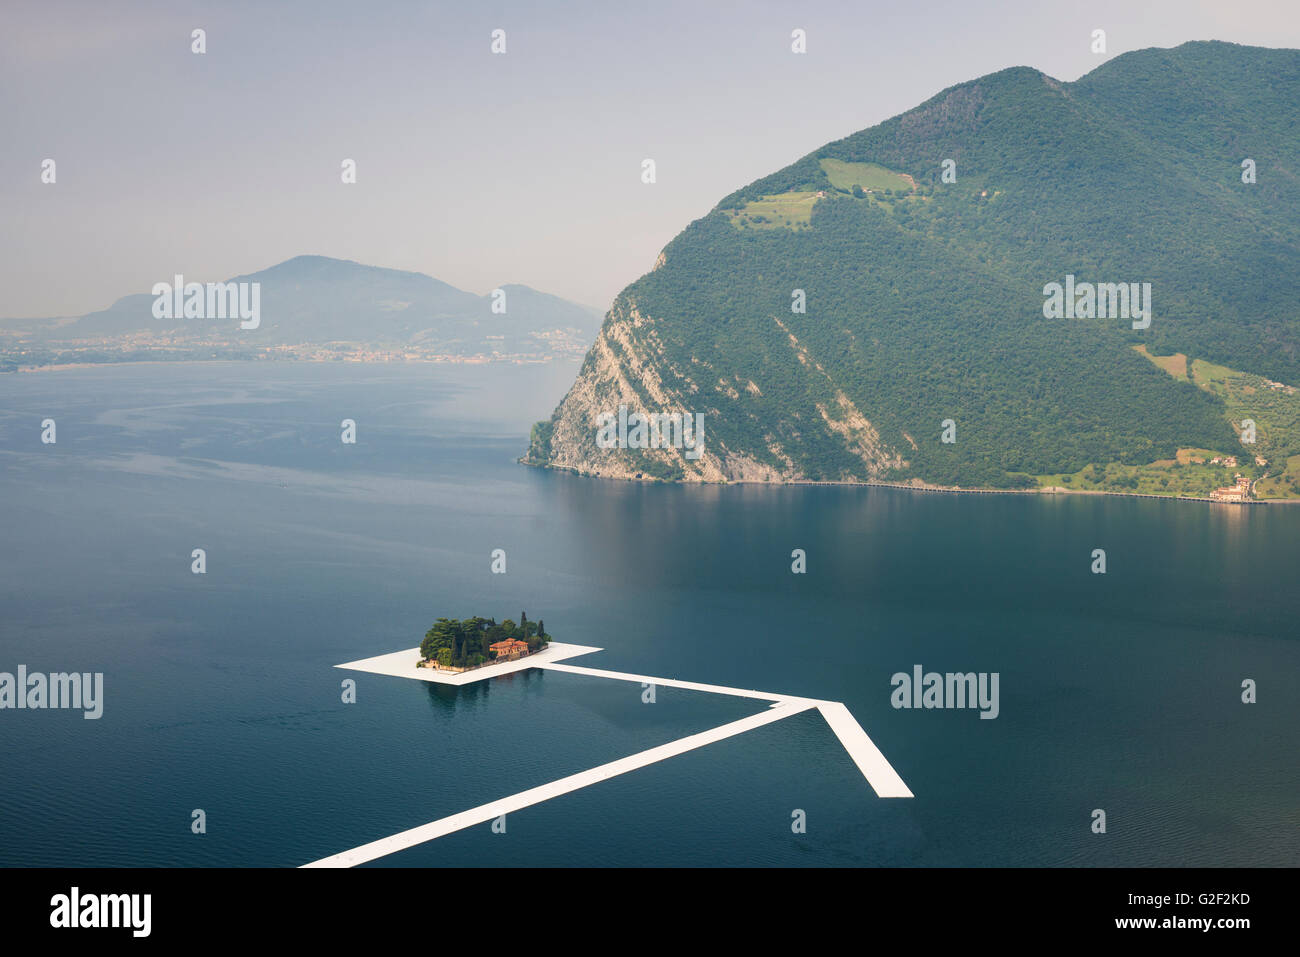 Piscine pontons forment une flèche géante à Saint Paul Island pour Christo's project 'Les quais flottants' sur le lac d'Iseo, Italie Banque D'Images